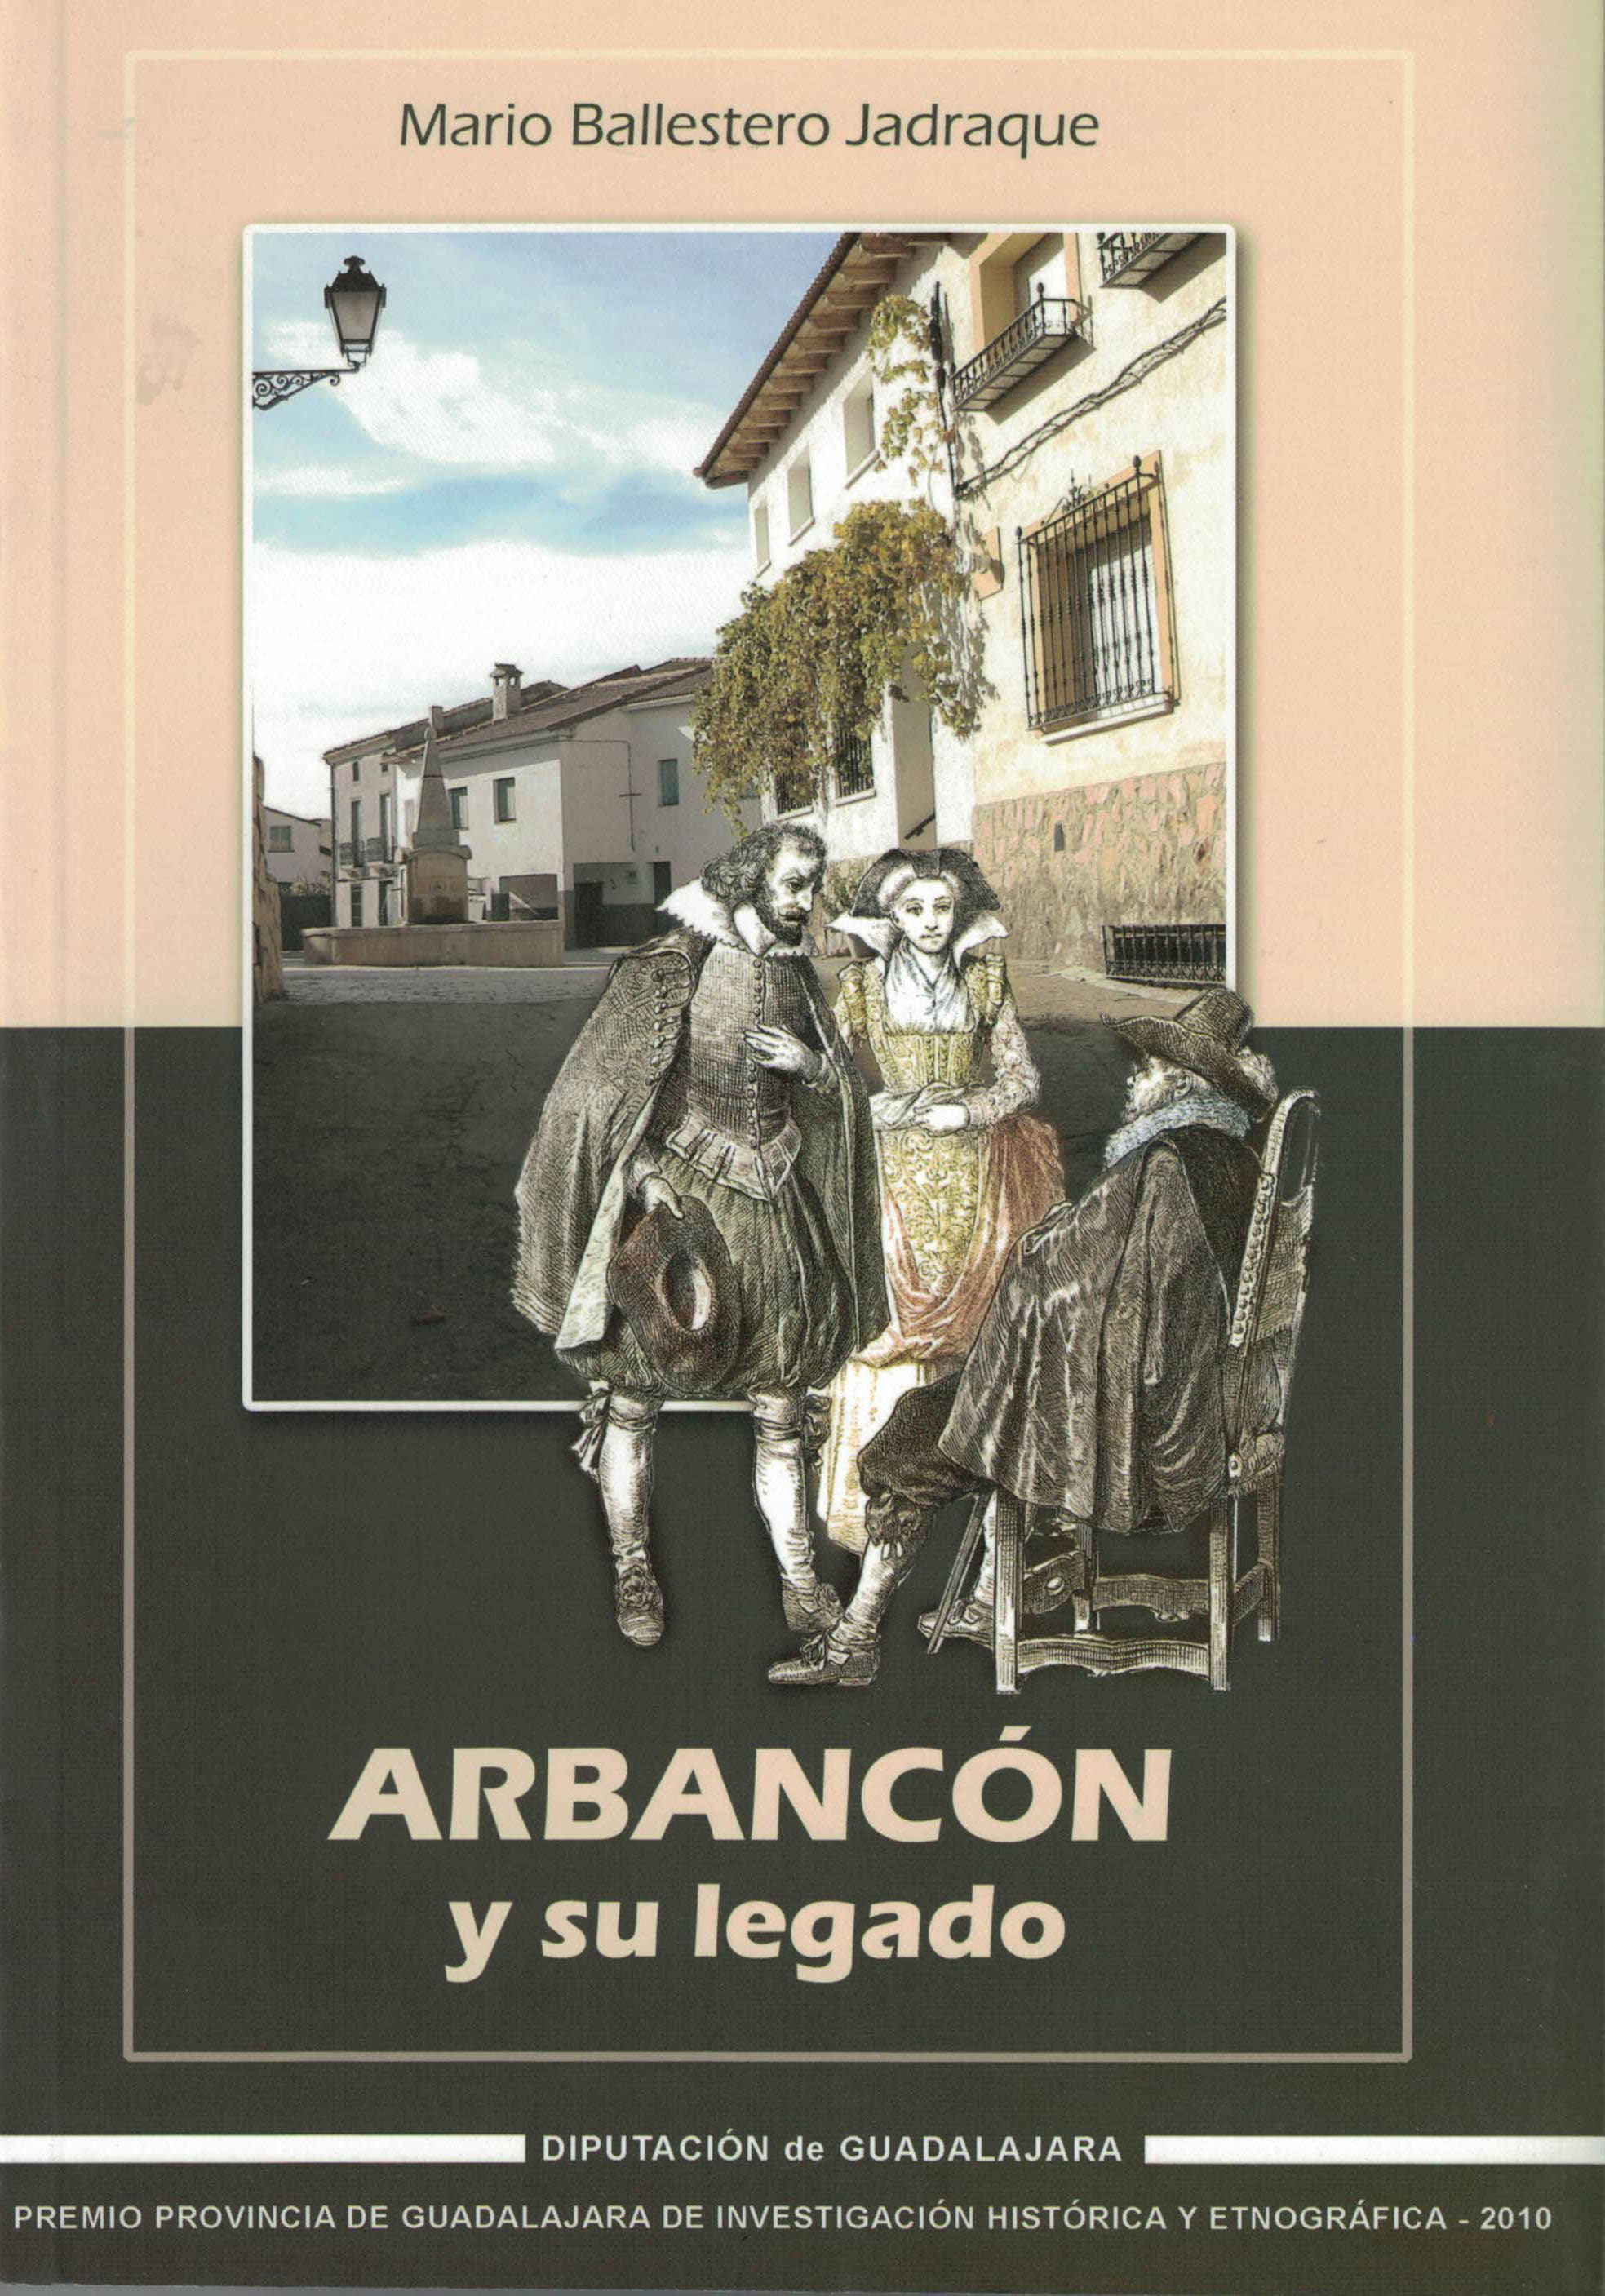 Arbancon y su legado Mario Ballestero Jadraque